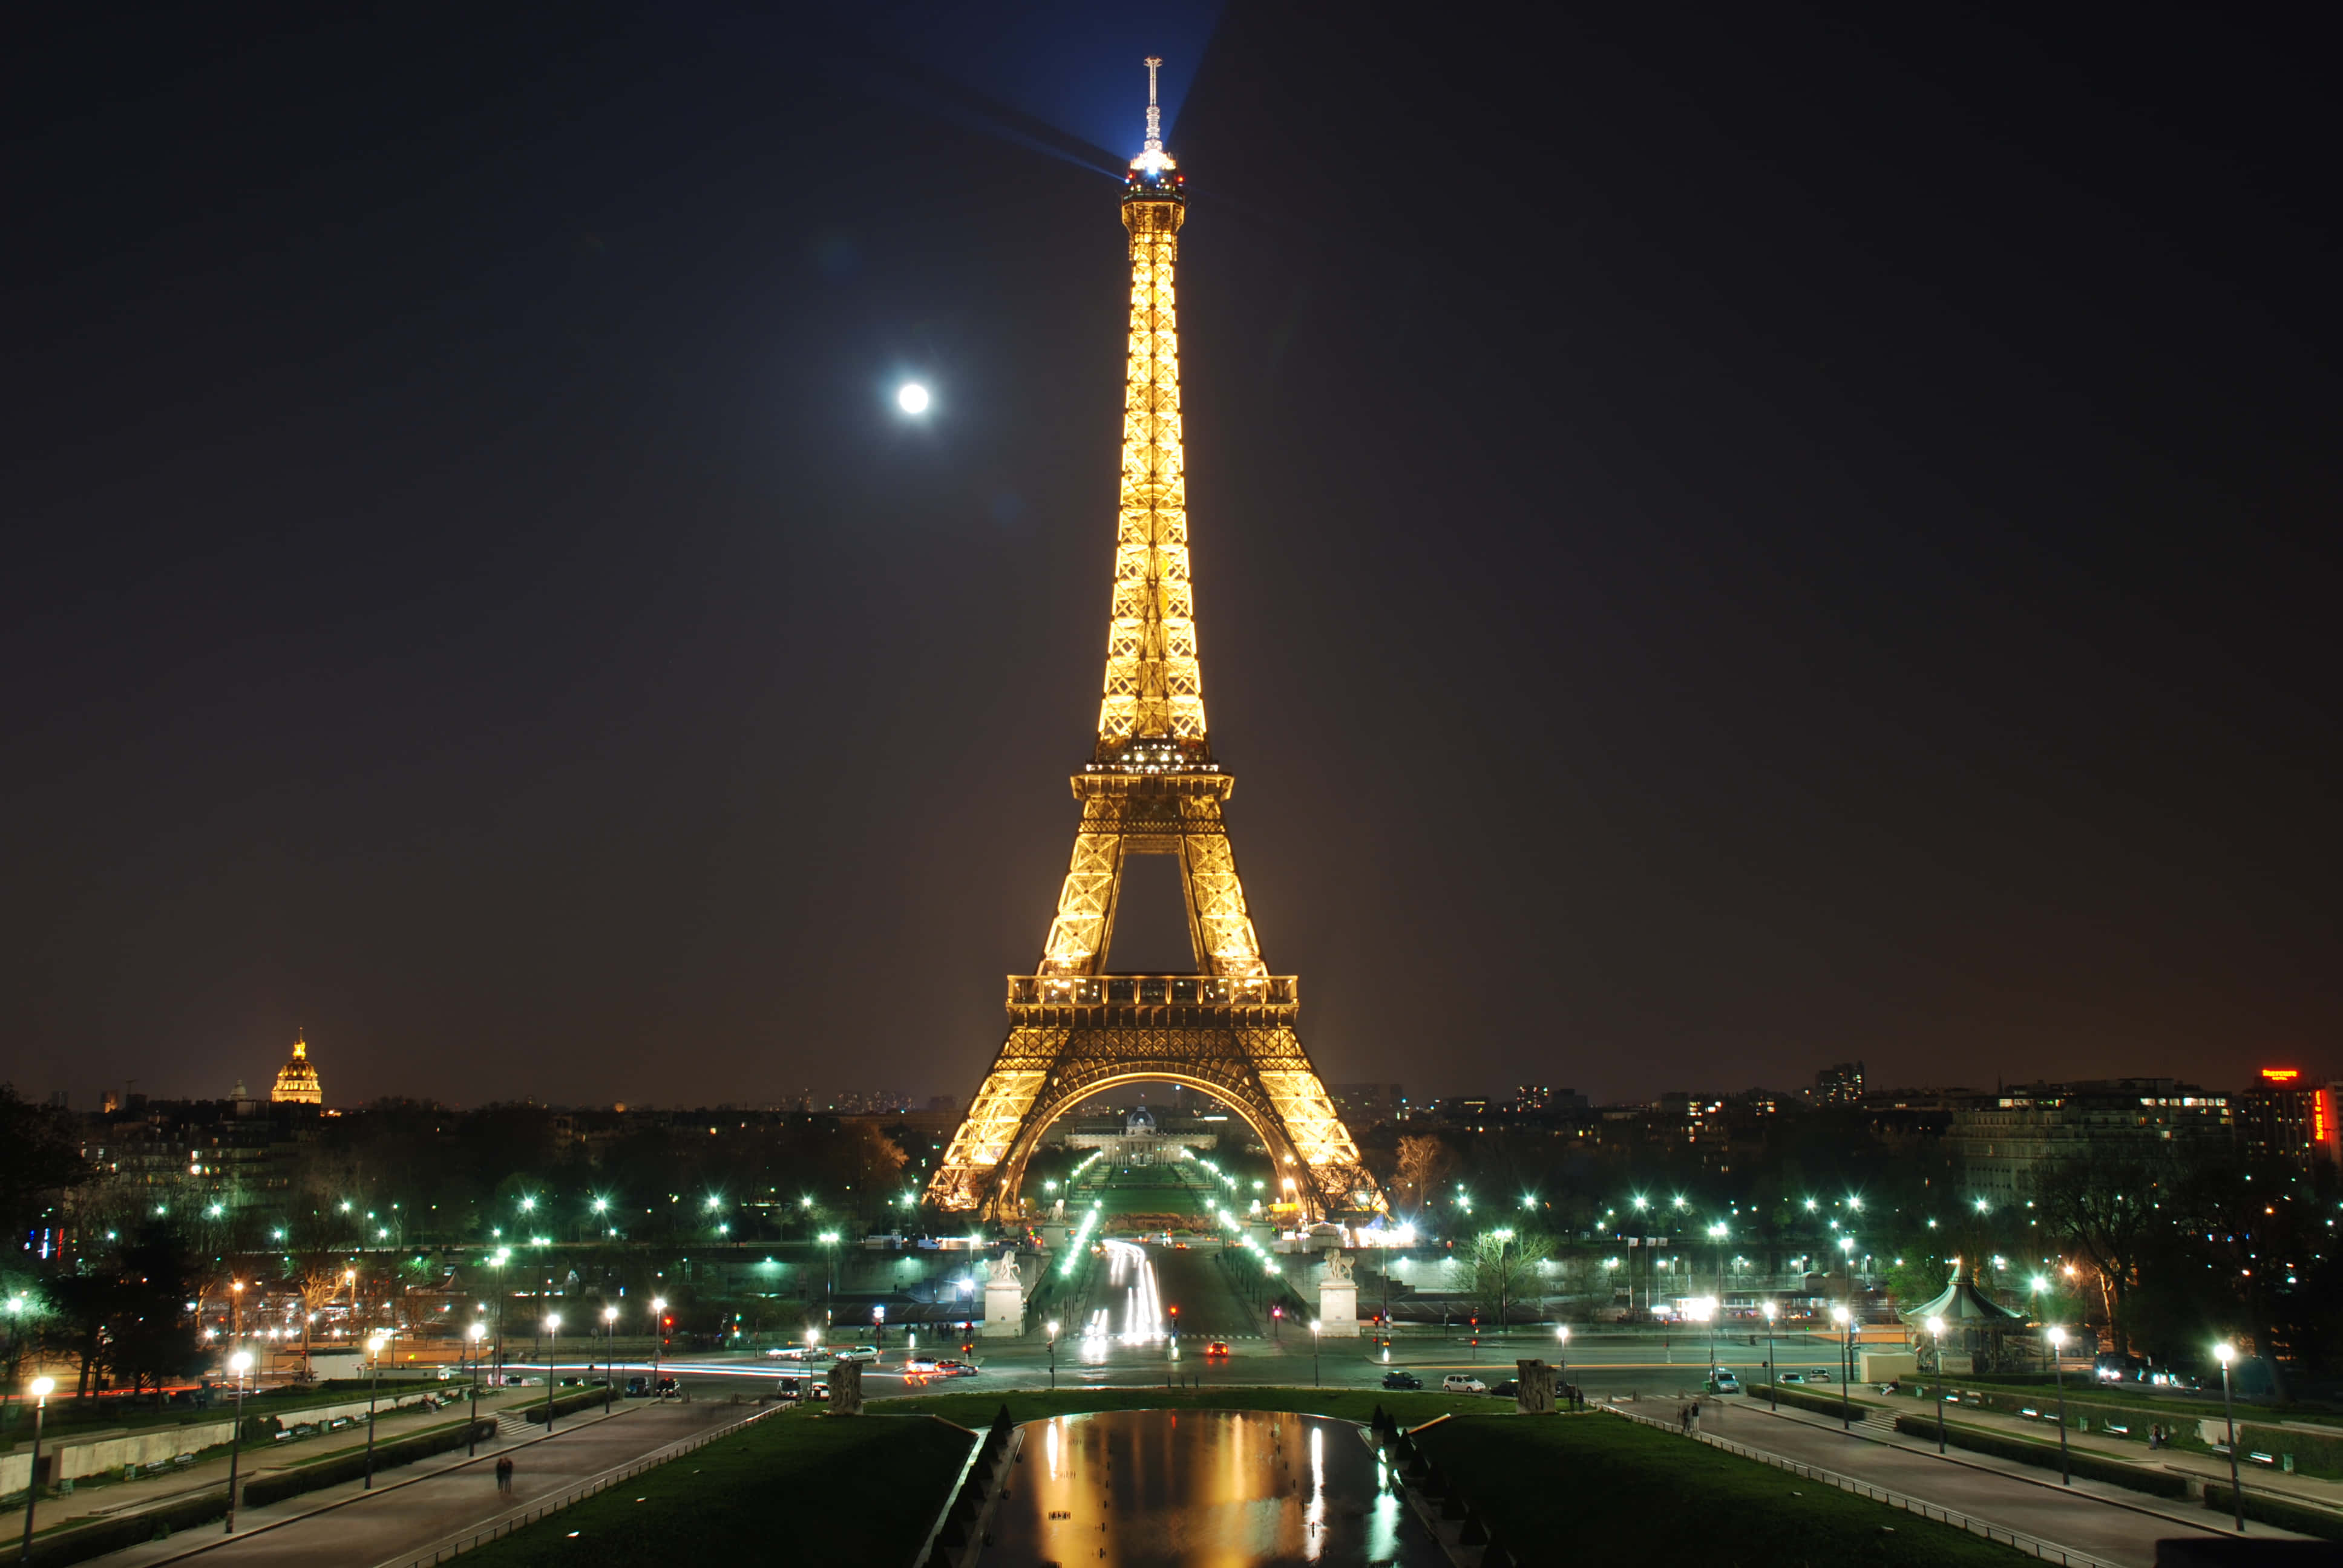 Unanotte Di Romanticismo E Brillantini Dalla Magnifica Torre Eiffel.